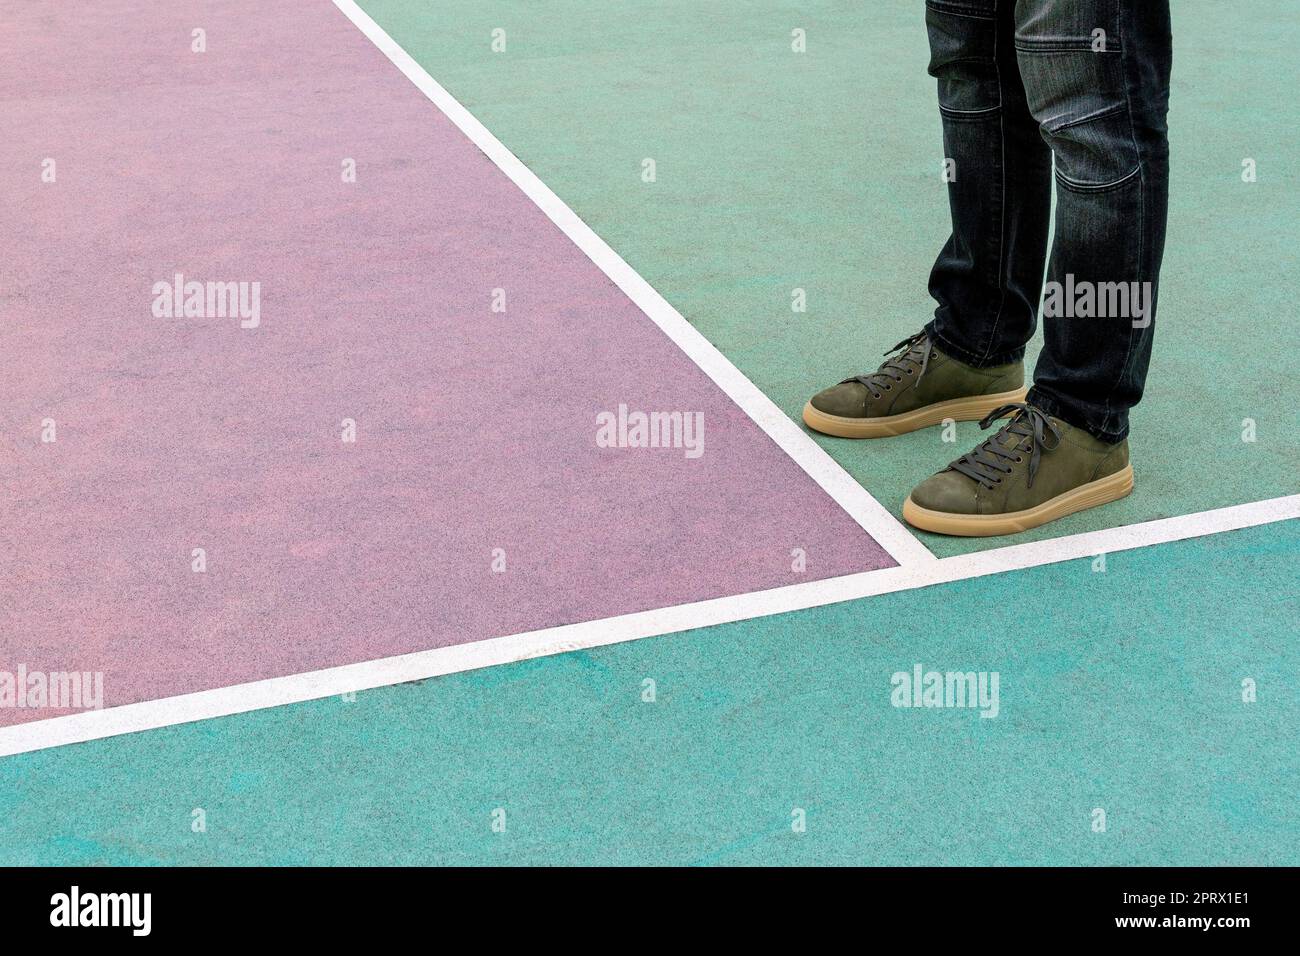 Männer Füße stehen auf dem gummierten Sportplatz, der in Pastelltönen gestrichen ist Stockfoto